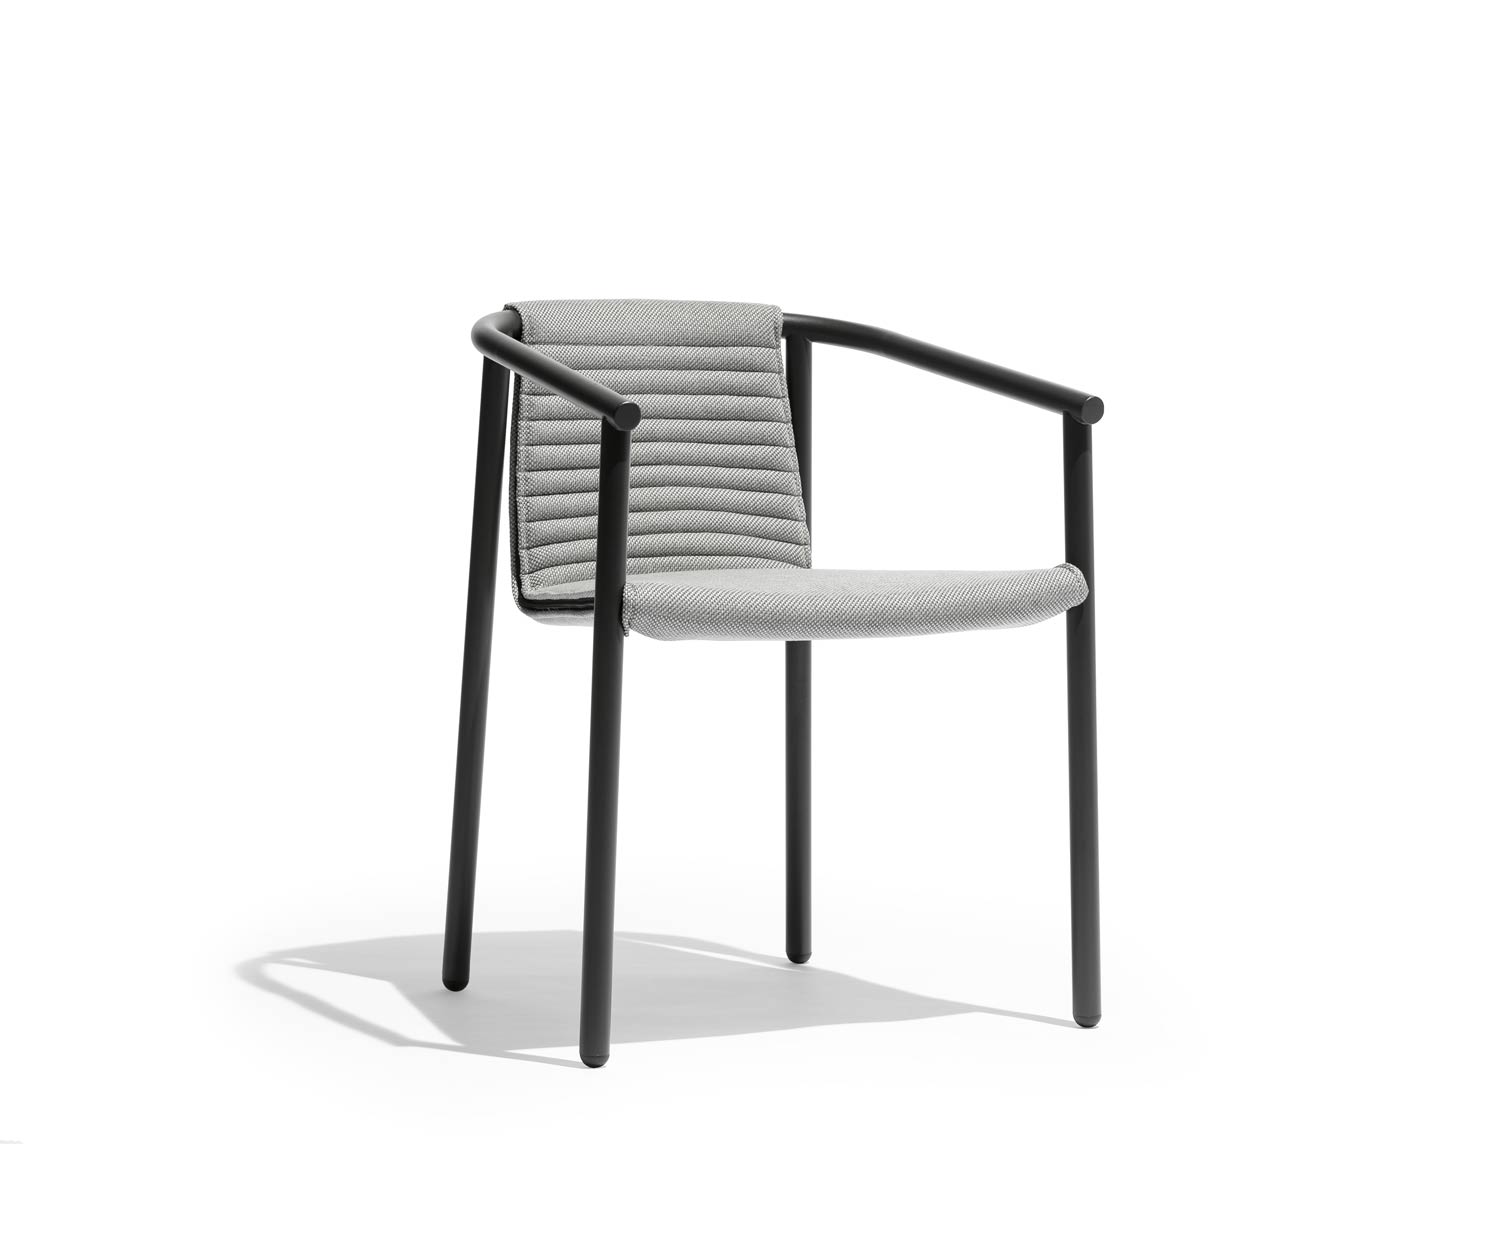 Exclusieve Todus Duct Round Design fauteuil met gestoffeerd kussen in grijs